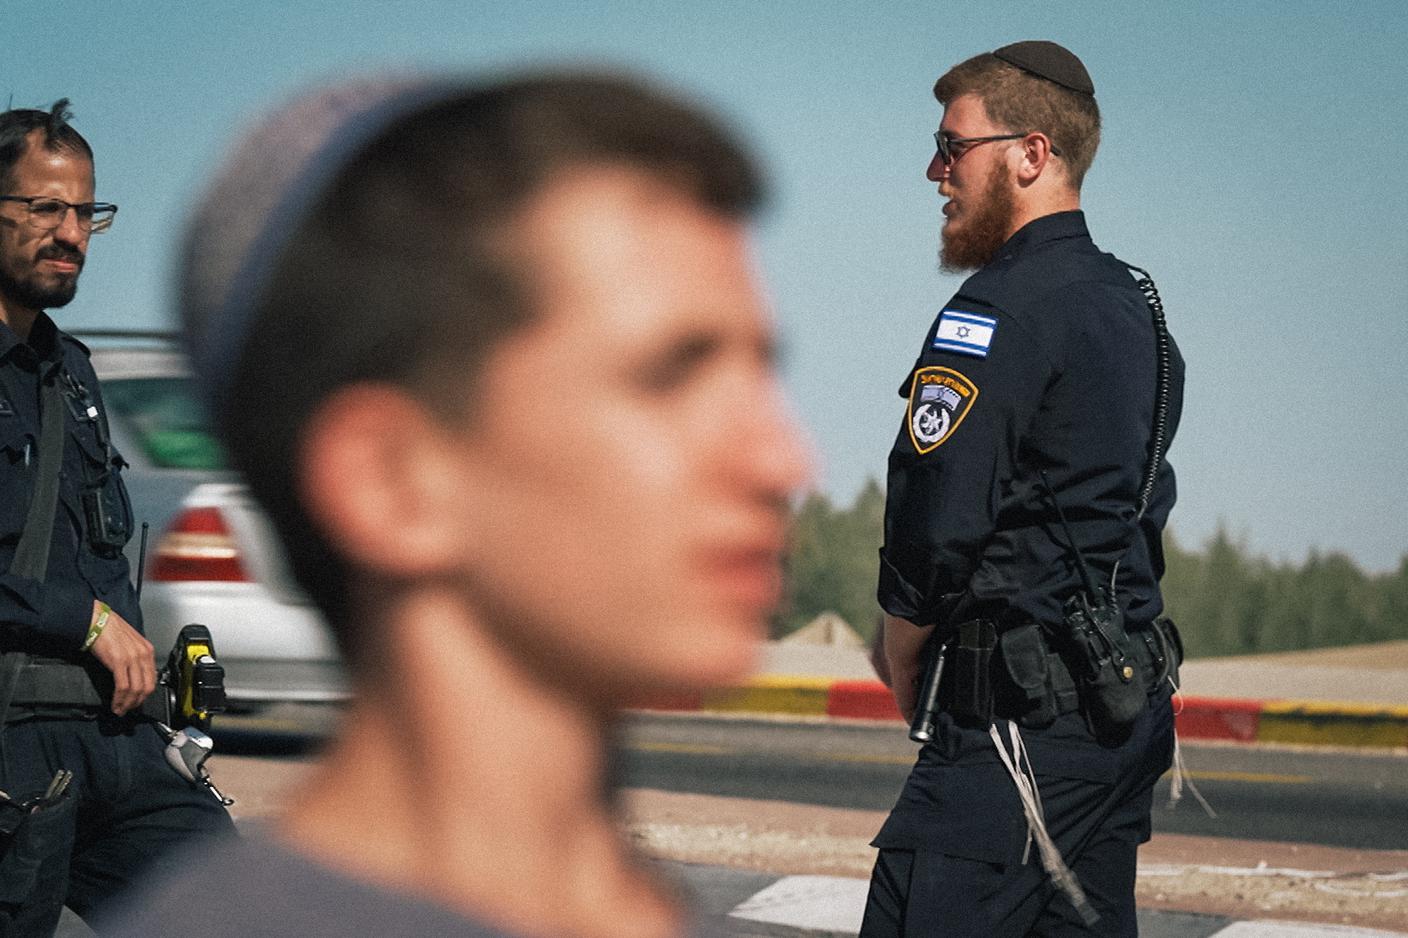 FOTO 6 - Un gruppo di israeliani ha creato i cosiddetti guardiani umanitari per contrastare i blocchi dei coloni- FOTO di MASSIMO PICCOLI - RSI.jpg